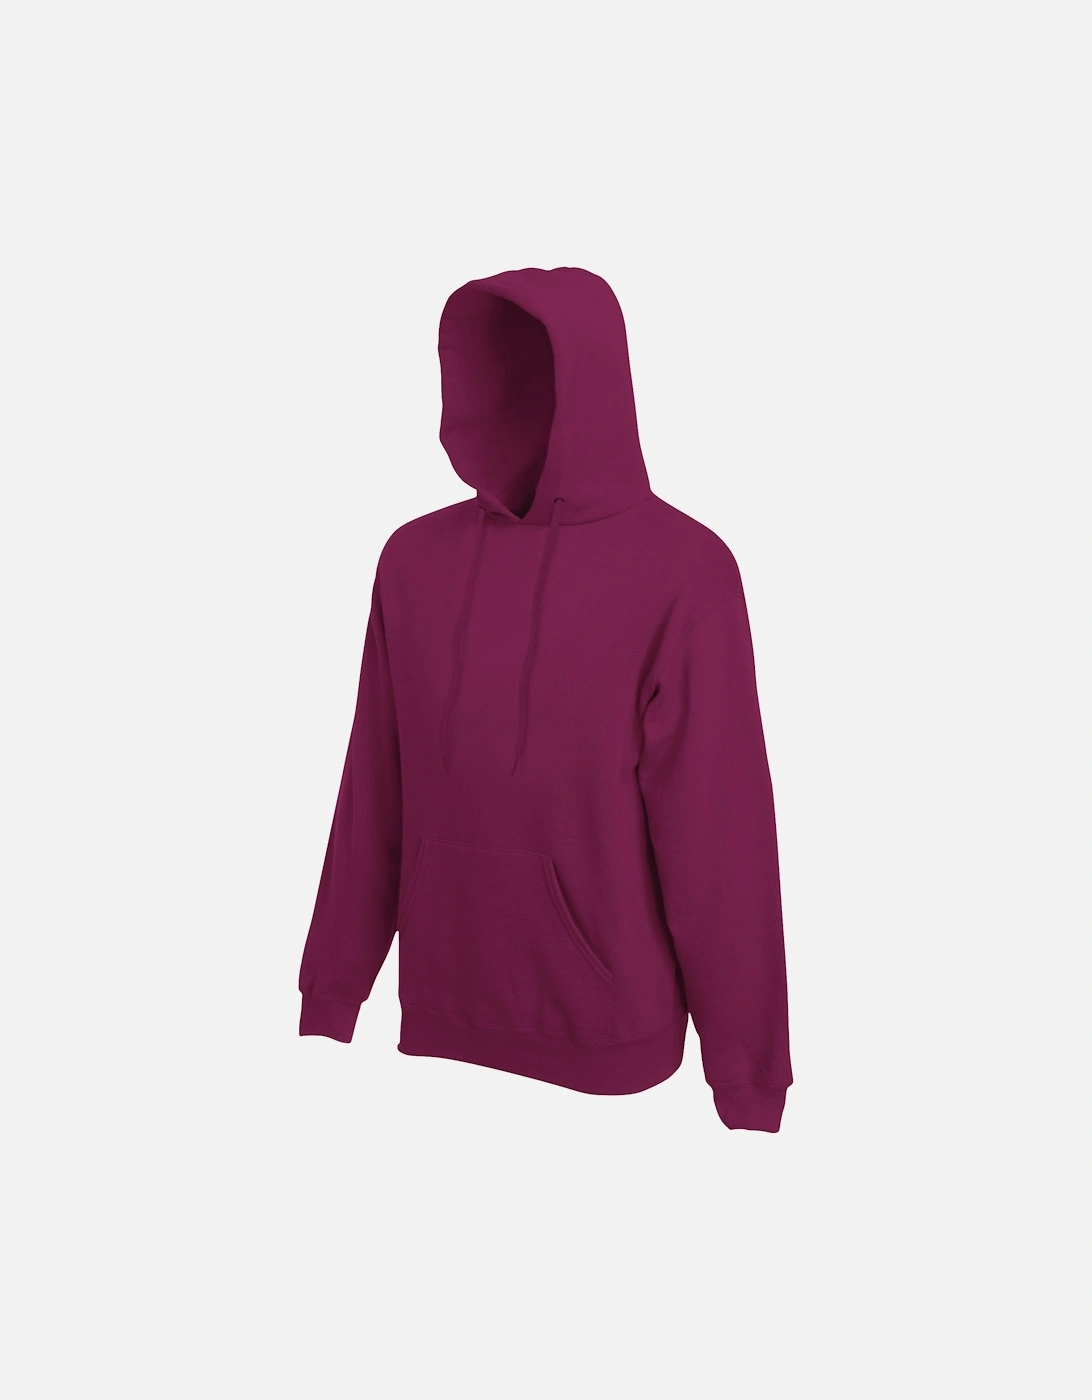 Mens Premium 70/30 Hooded Sweatshirt / Hoodie, 4 of 3